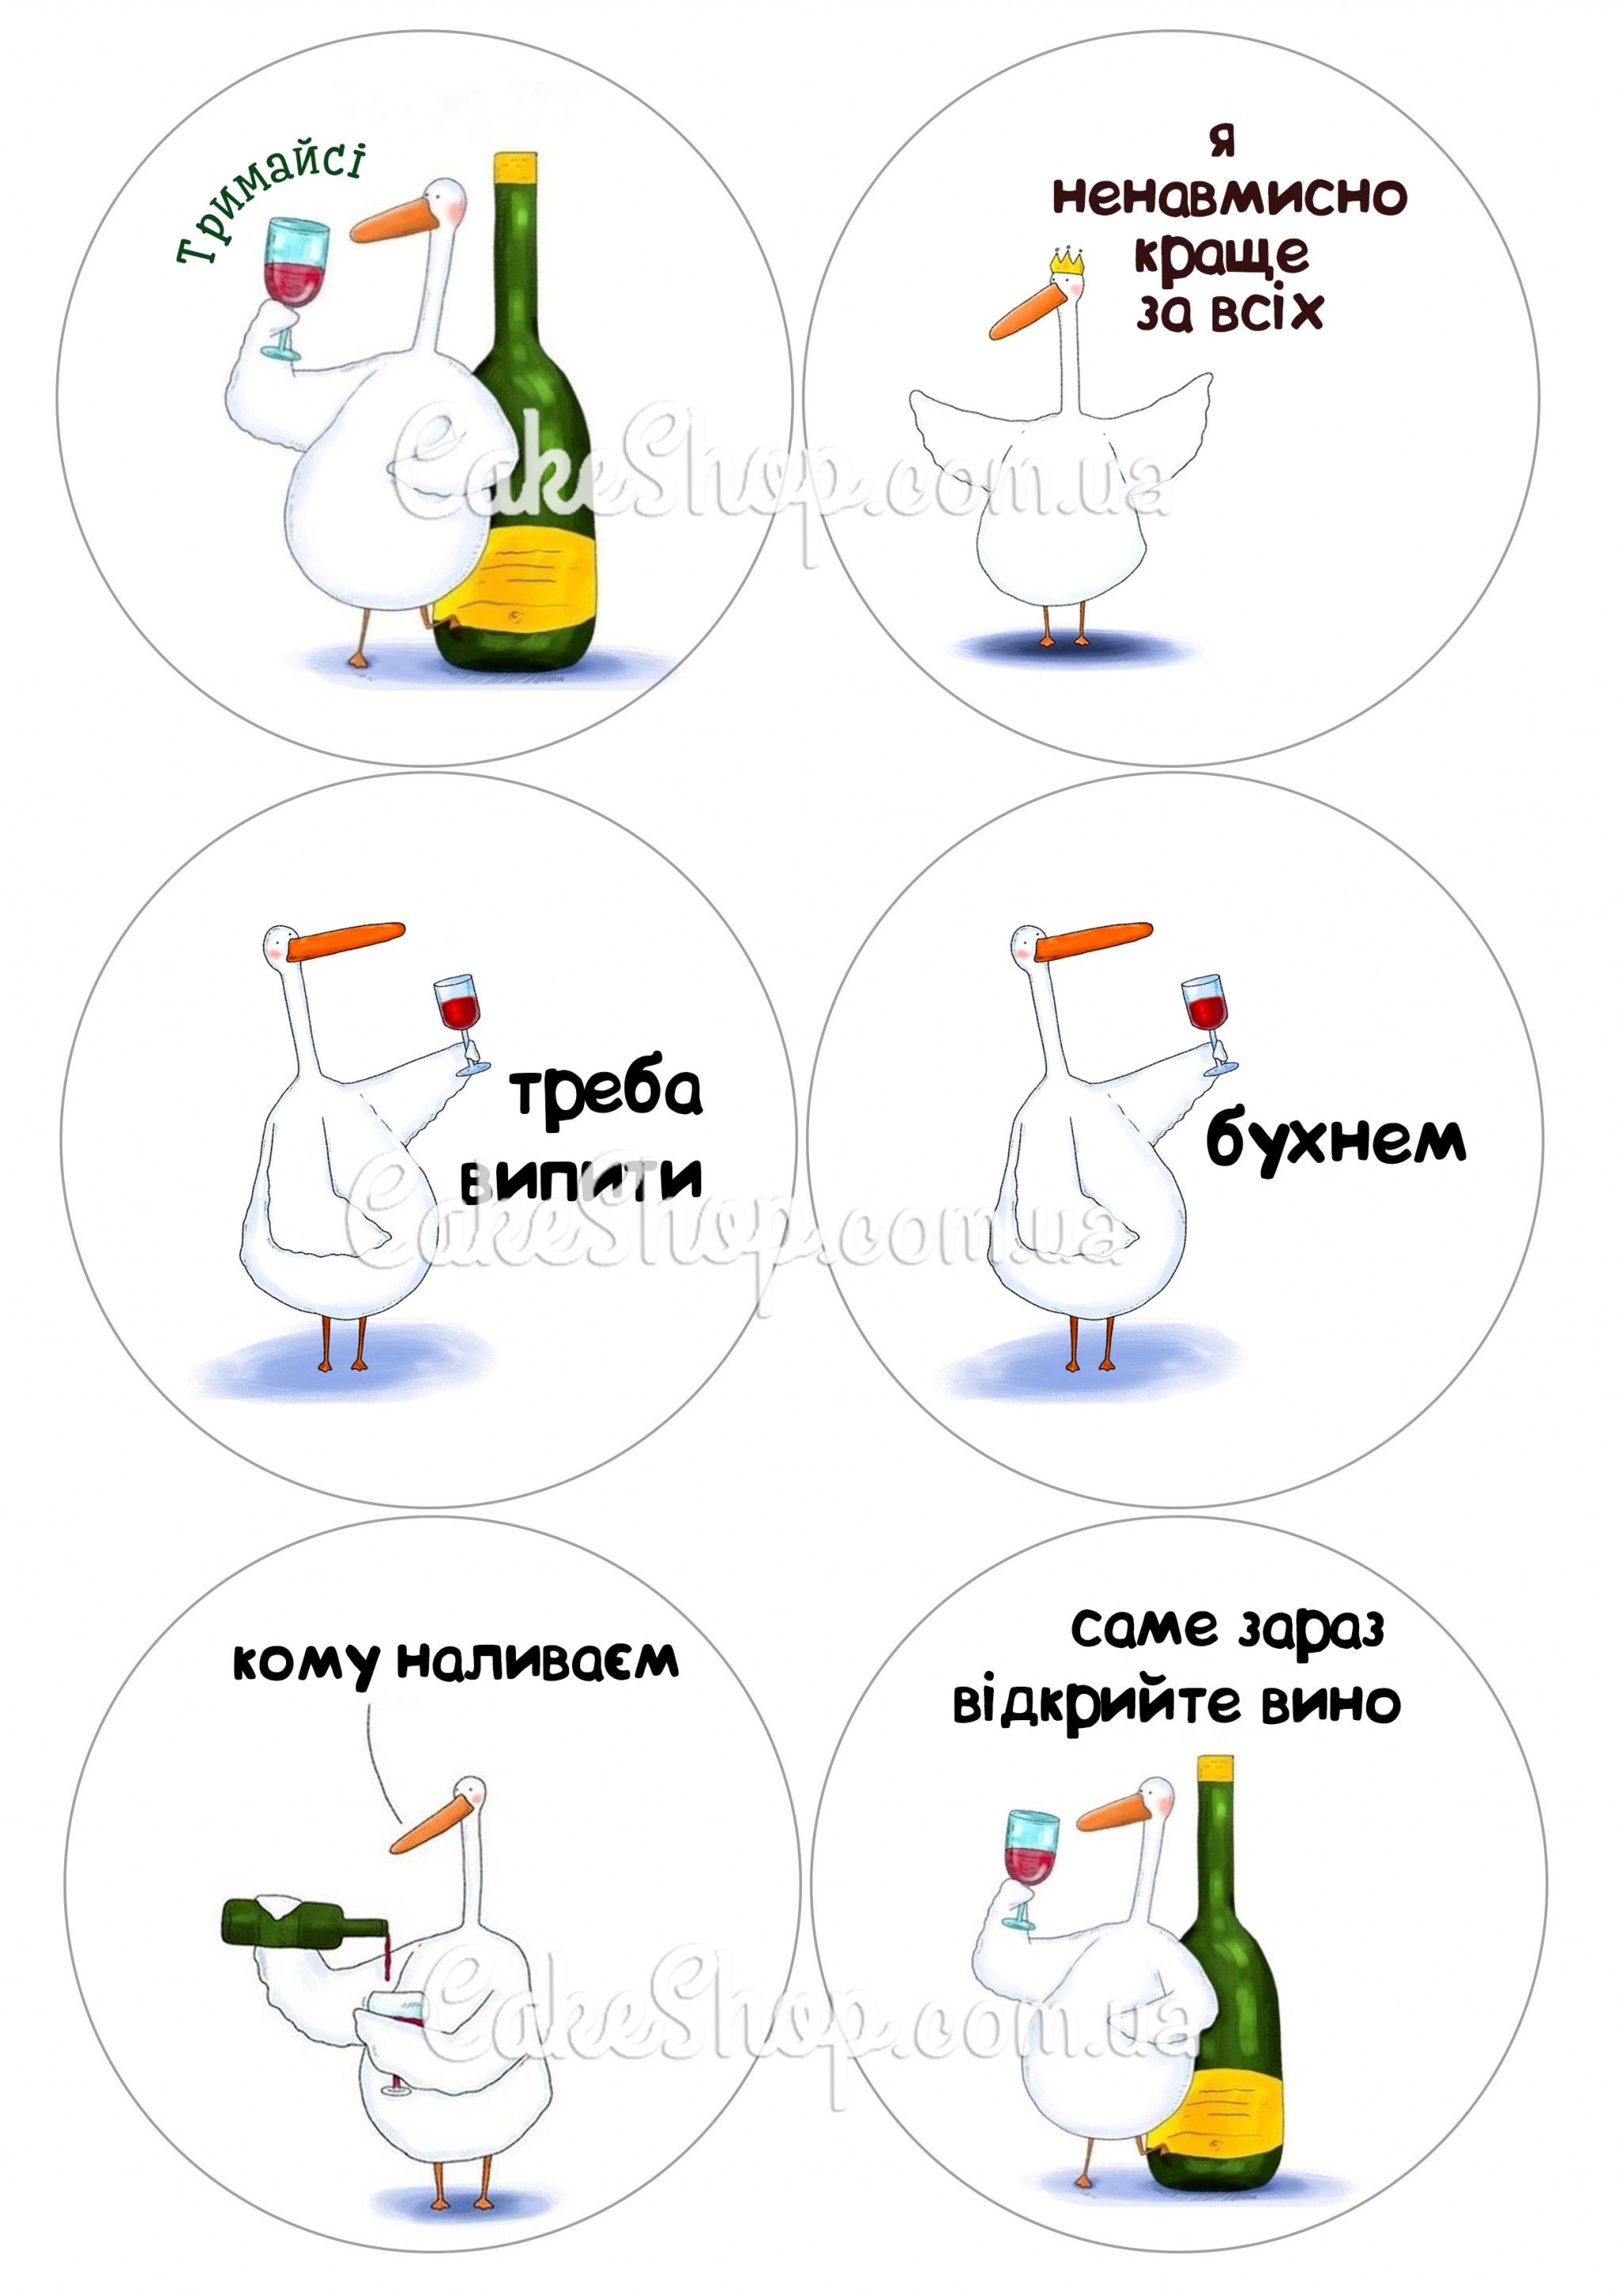 ⋗ Вафельна картинка Гусь 2 купити в Україні ➛ CakeShop.com.ua, фото